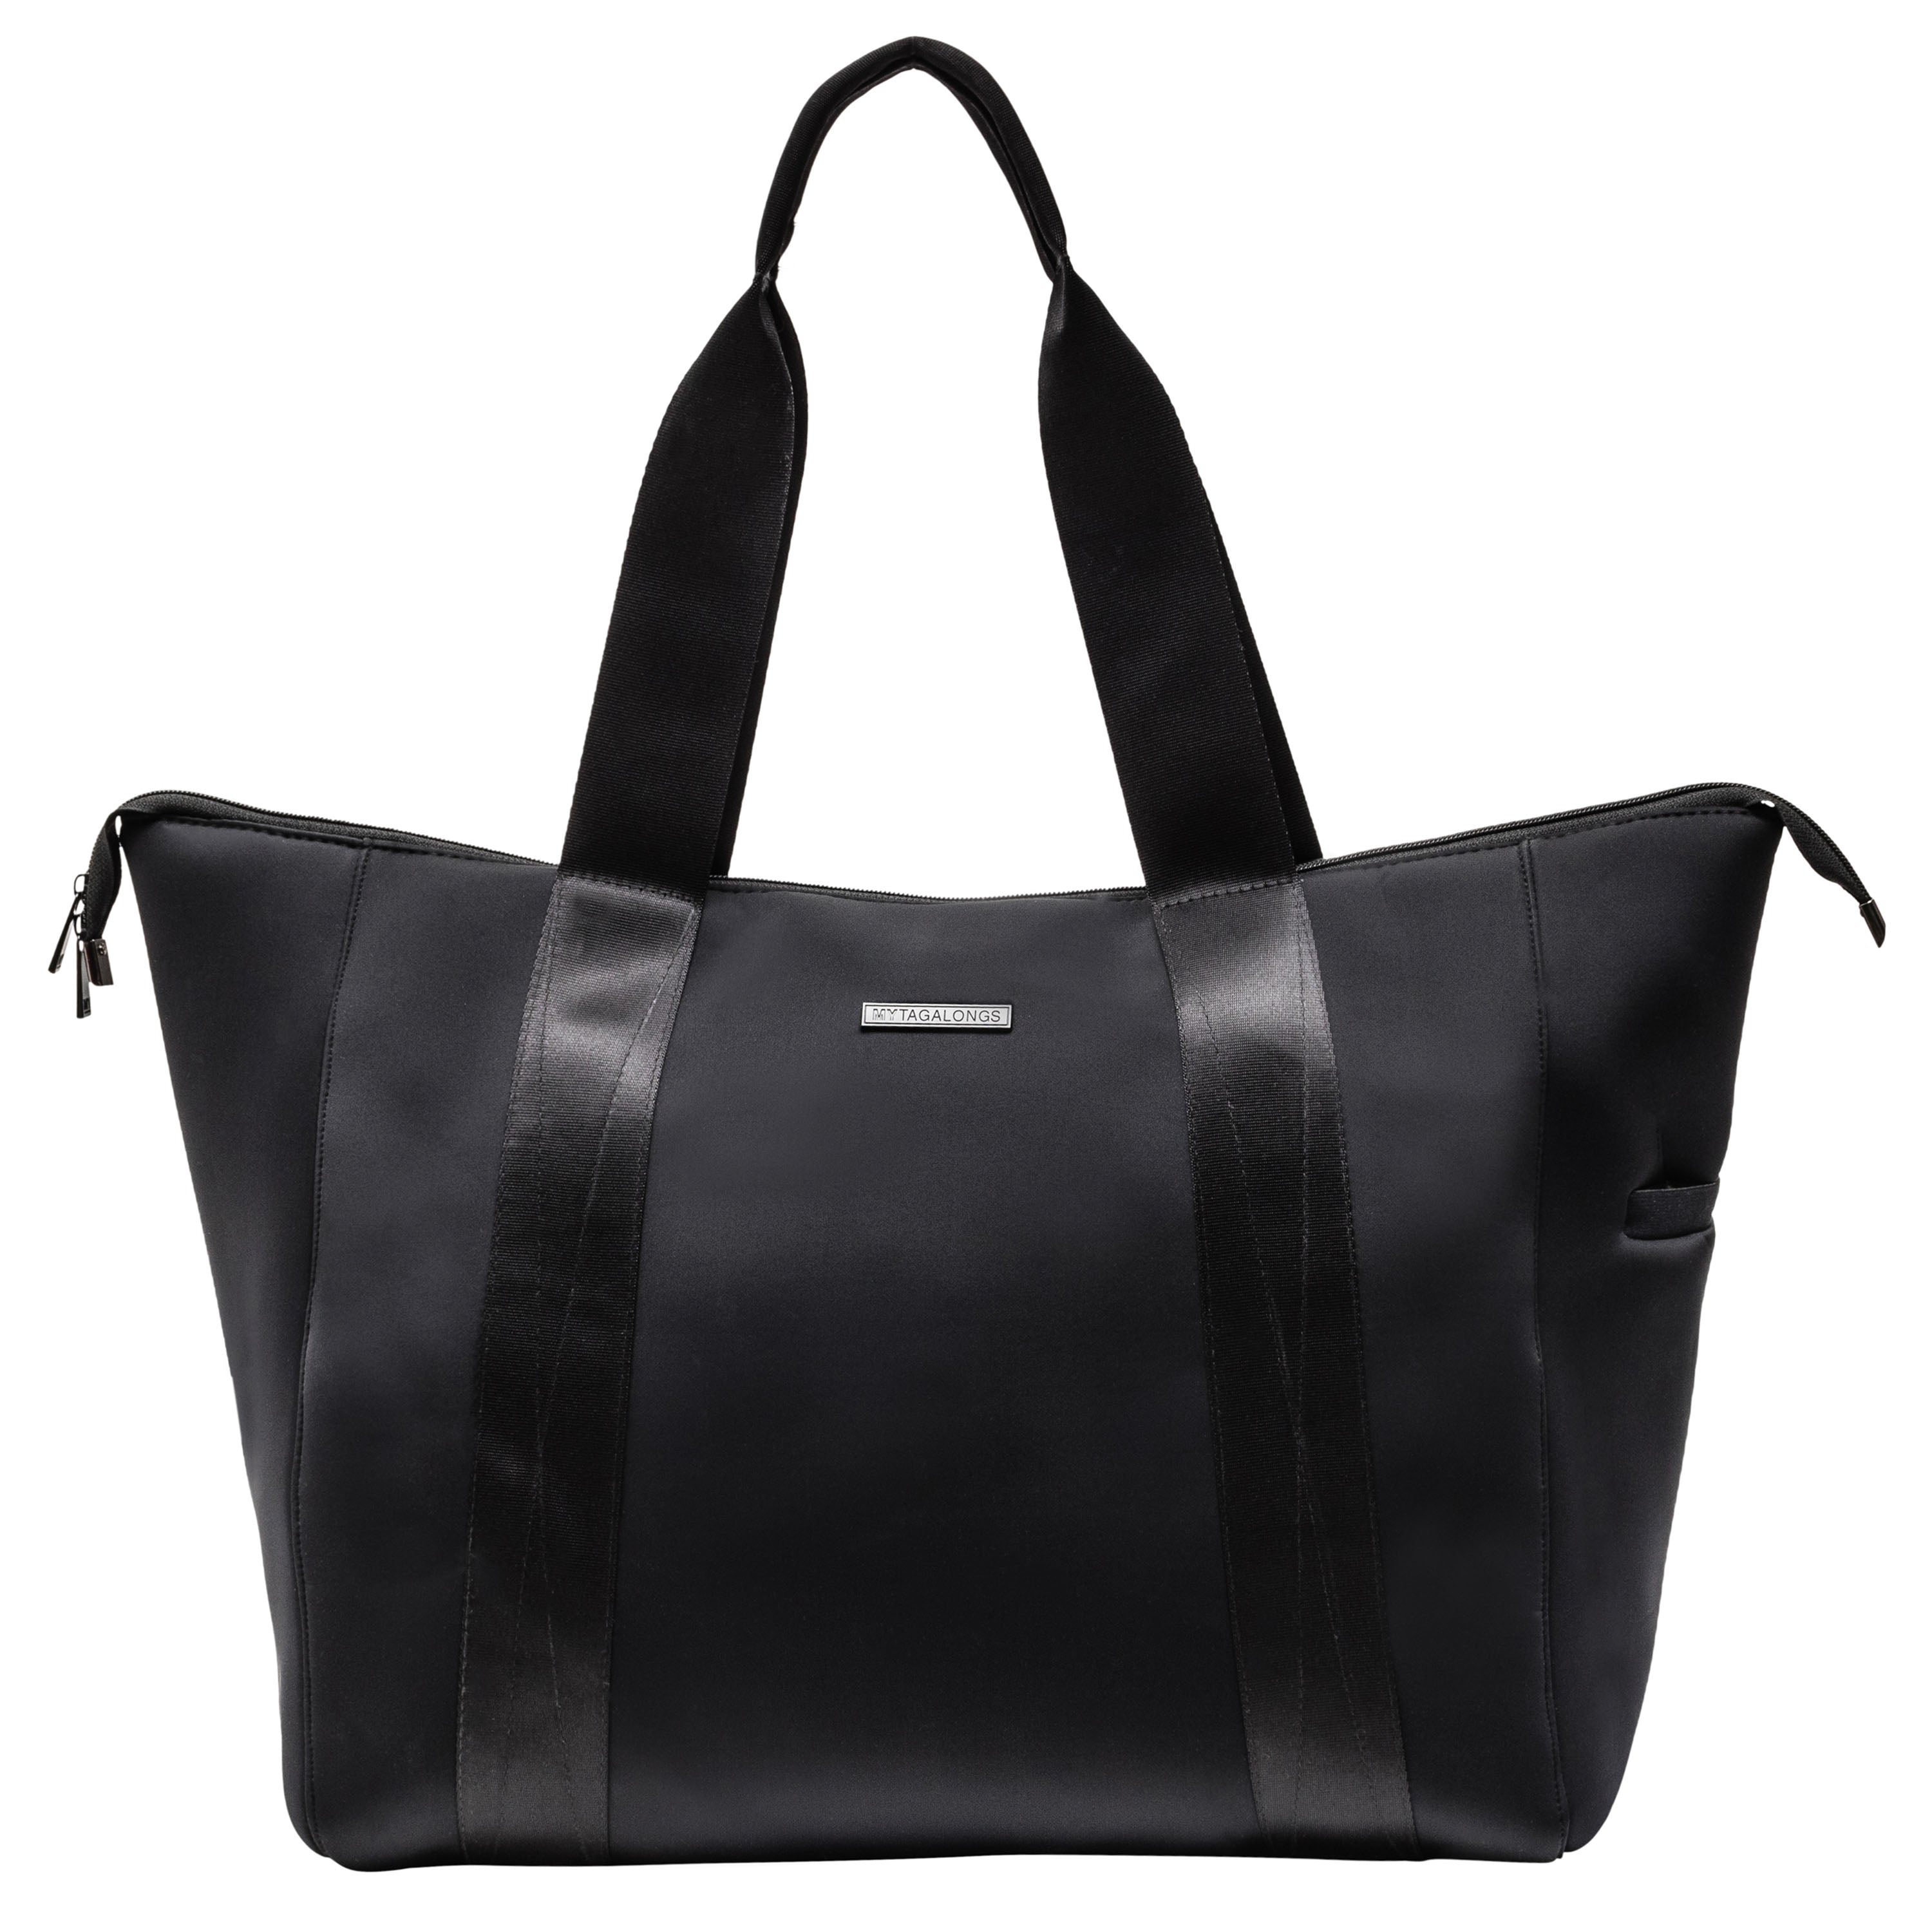 Black stylish weekender tote bag made of neoprene